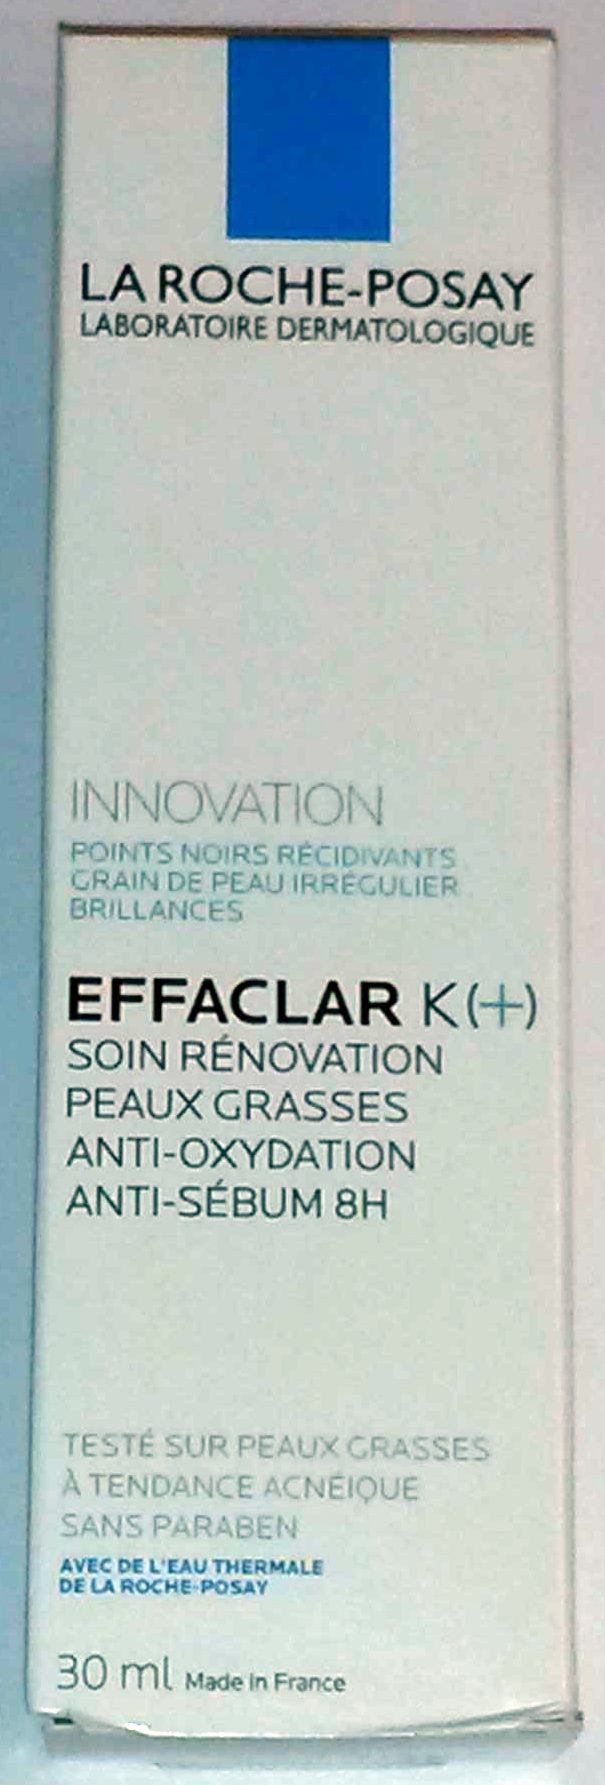 Effaclar K (+) - Product - fr